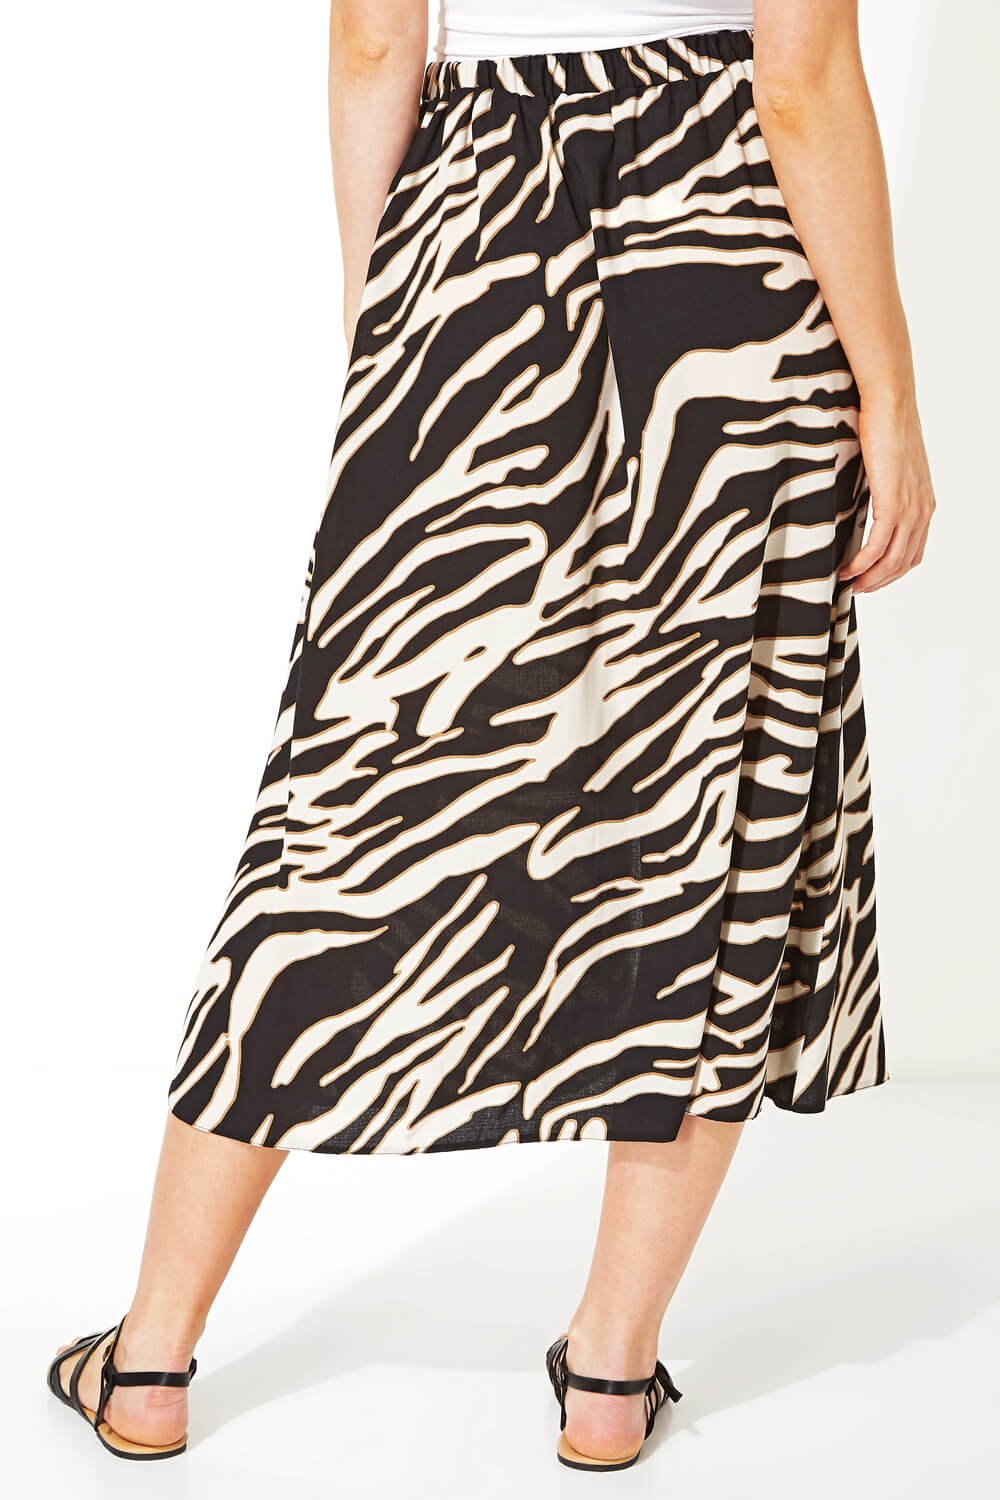 Ivory  Zebra Print Skirt, Image 3 of 4